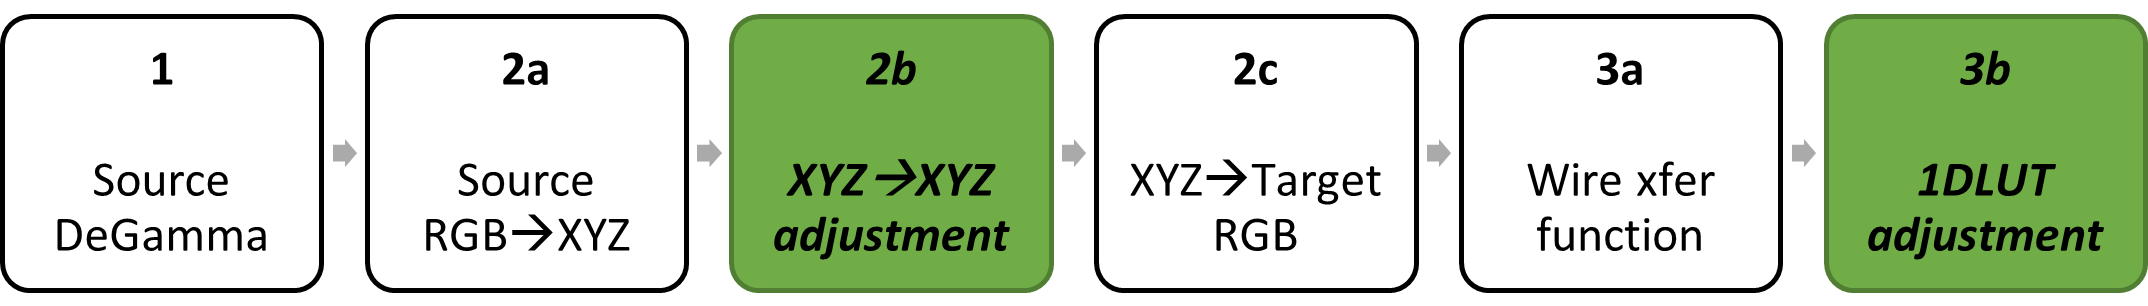 블록 다이어그램: 원본 degamma; 색 행렬이 원본 RGB에서 XYZ로 분해되고, XYZ에서 XYZ로, XYZ로 분해되어 RGB를 대상으로 합니다. 대상 리감마가 전신 전송 함수로 분해됨, 1DLUT 조정